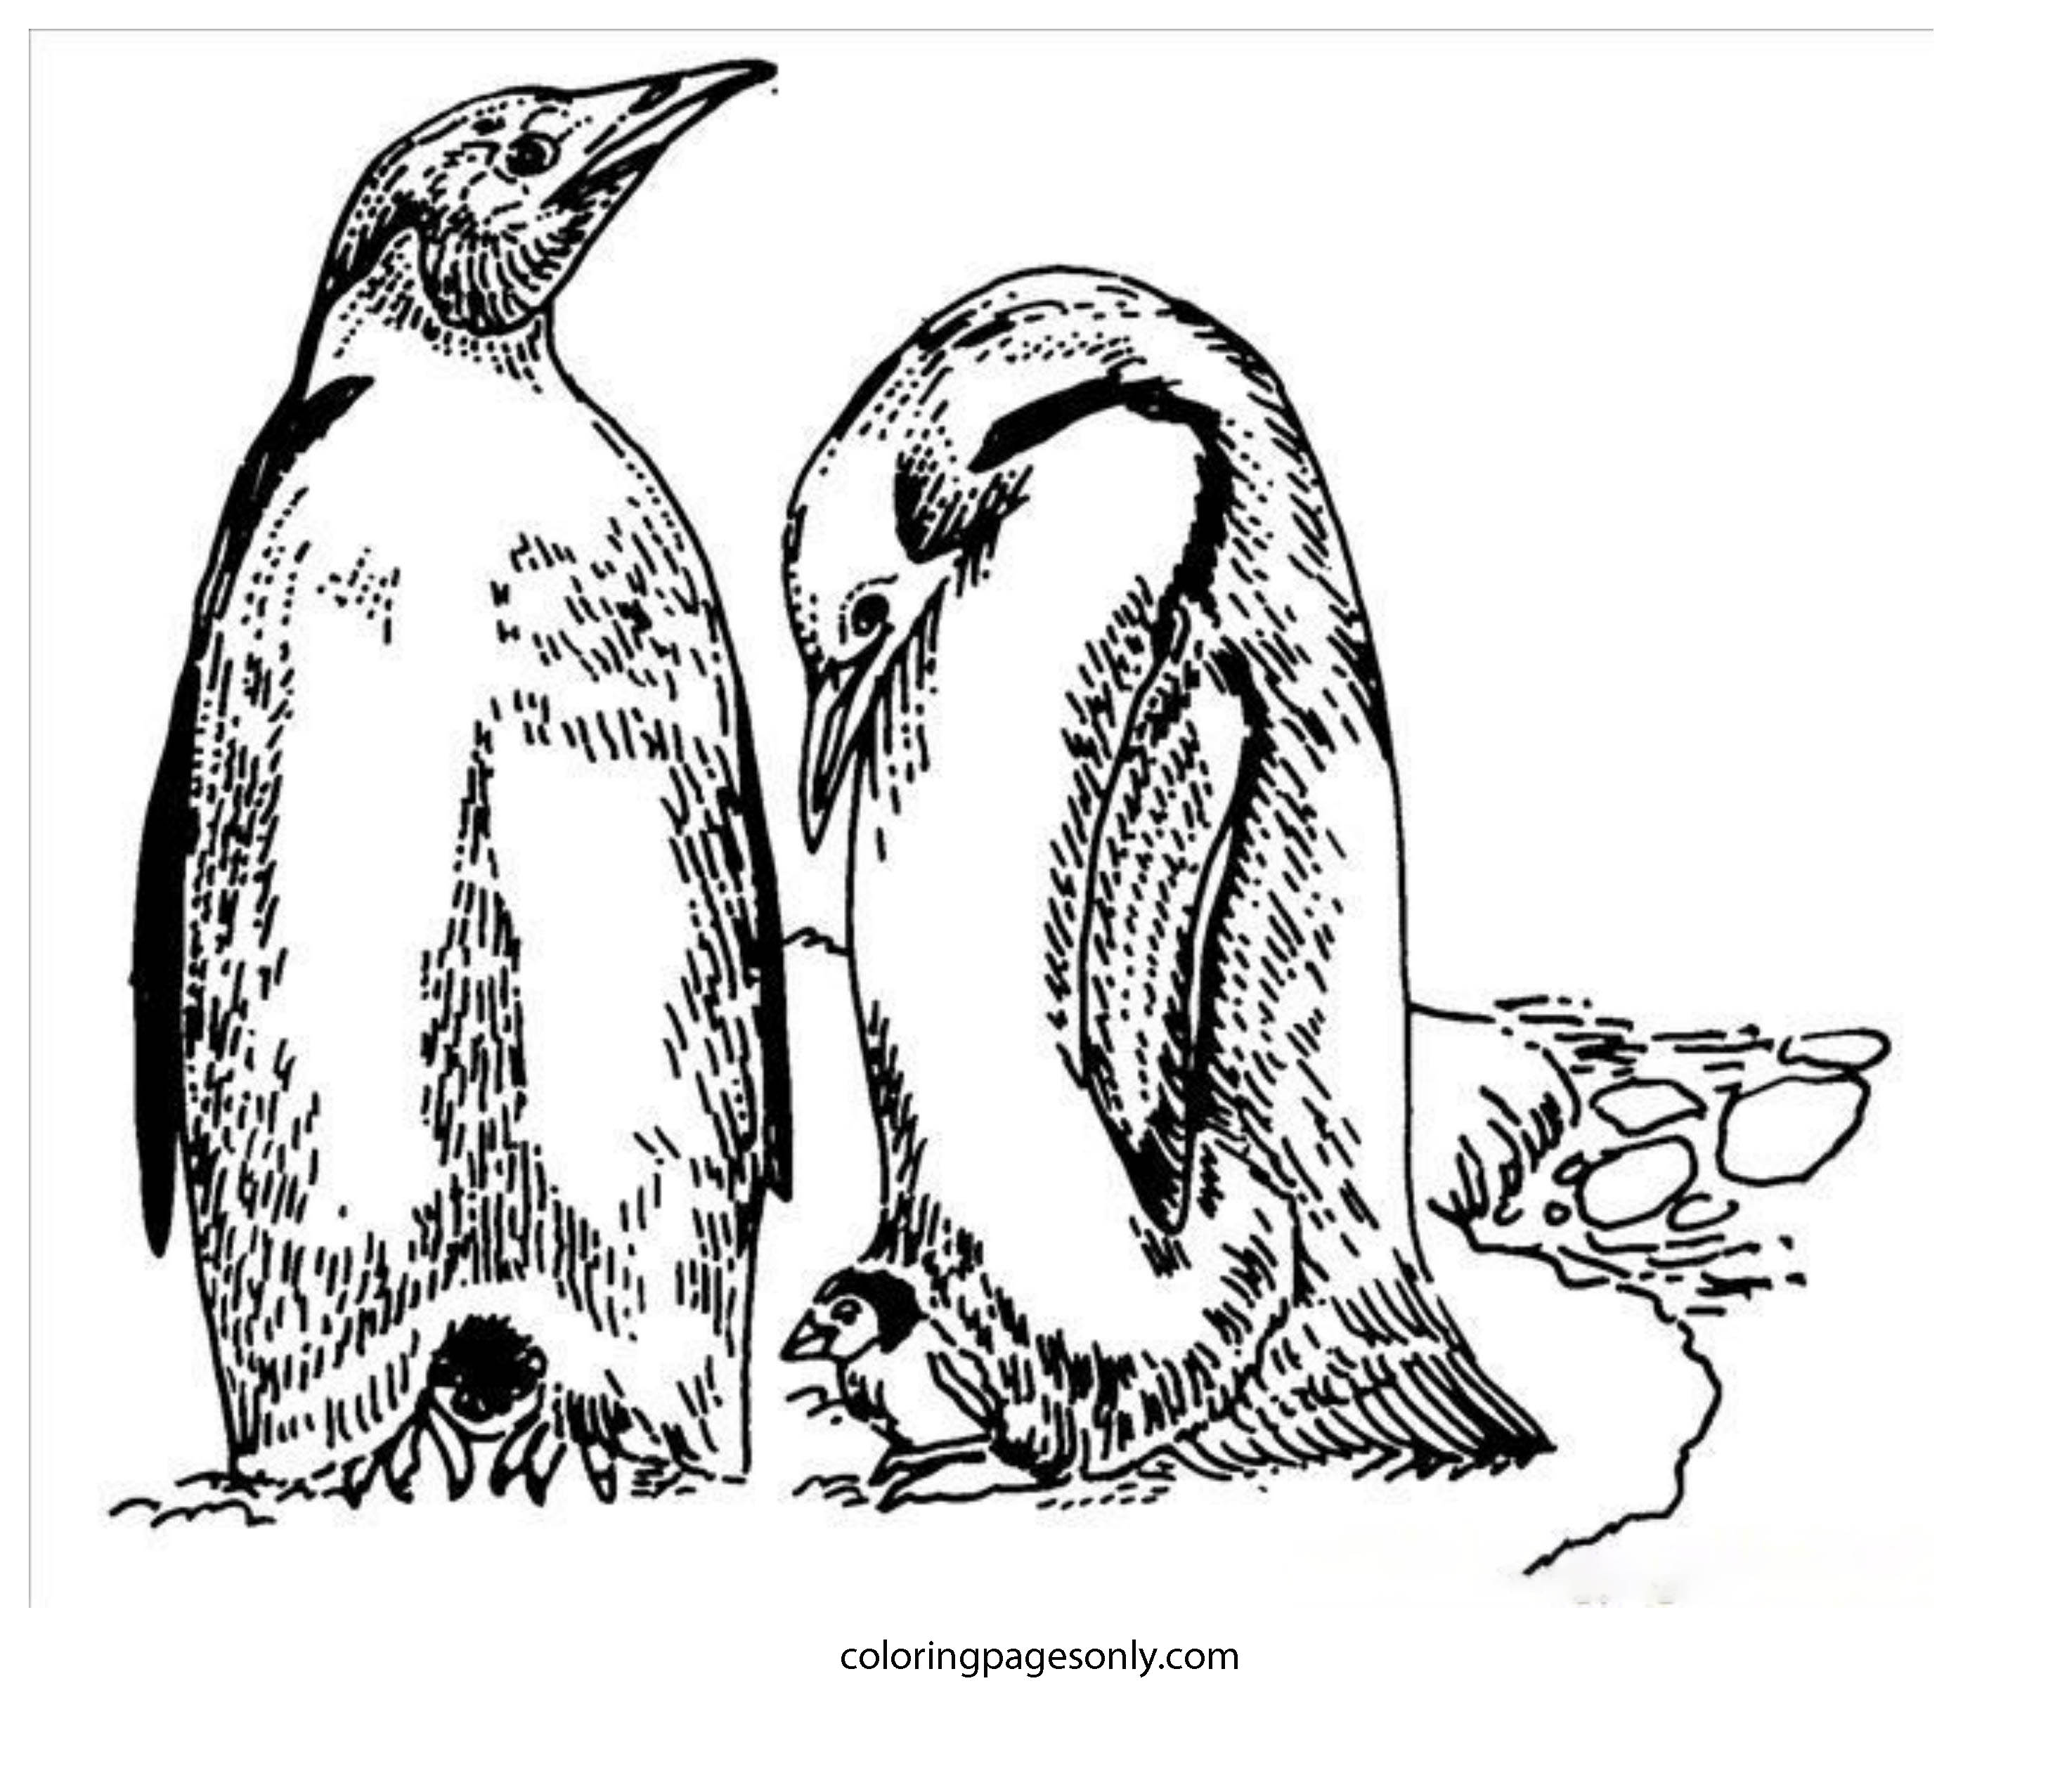 Mannelijke en vrouwelijke pinguïn op het Noordpoolgebied van de Noord- en Zuidpool